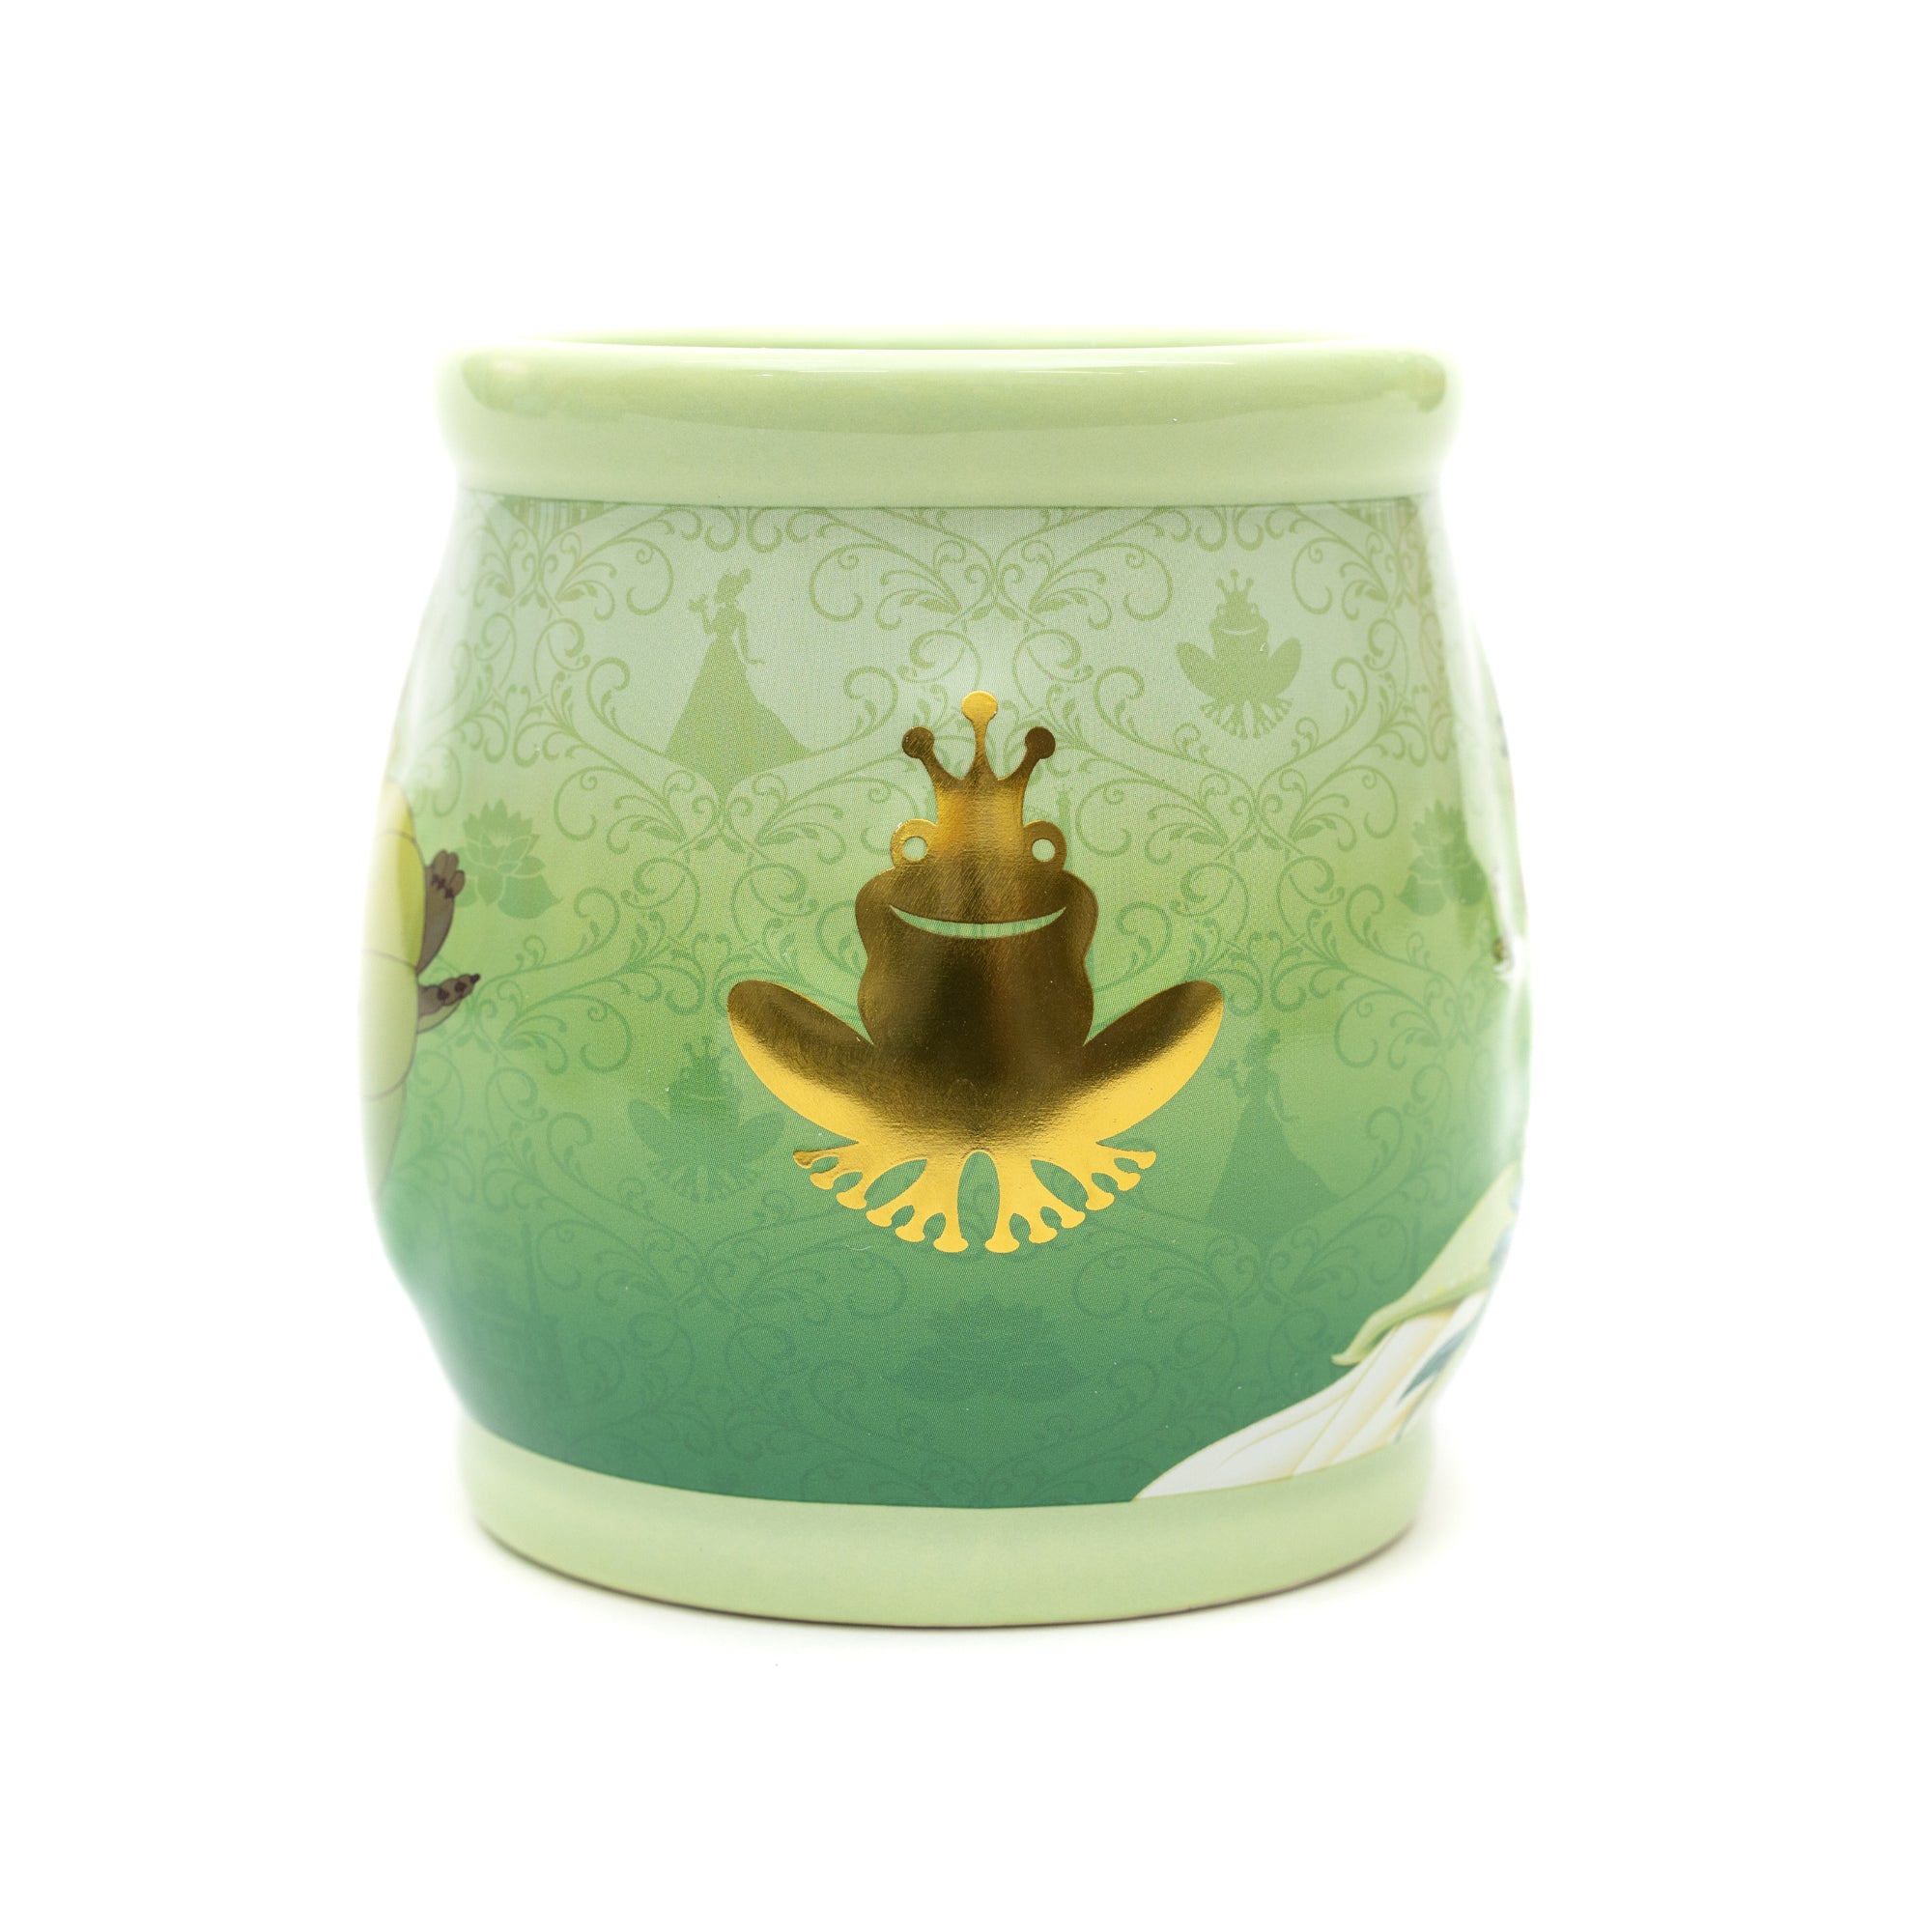 Disney Princess Stories Series Tiana Ceramic Relief Mug 19oz FINALSALE